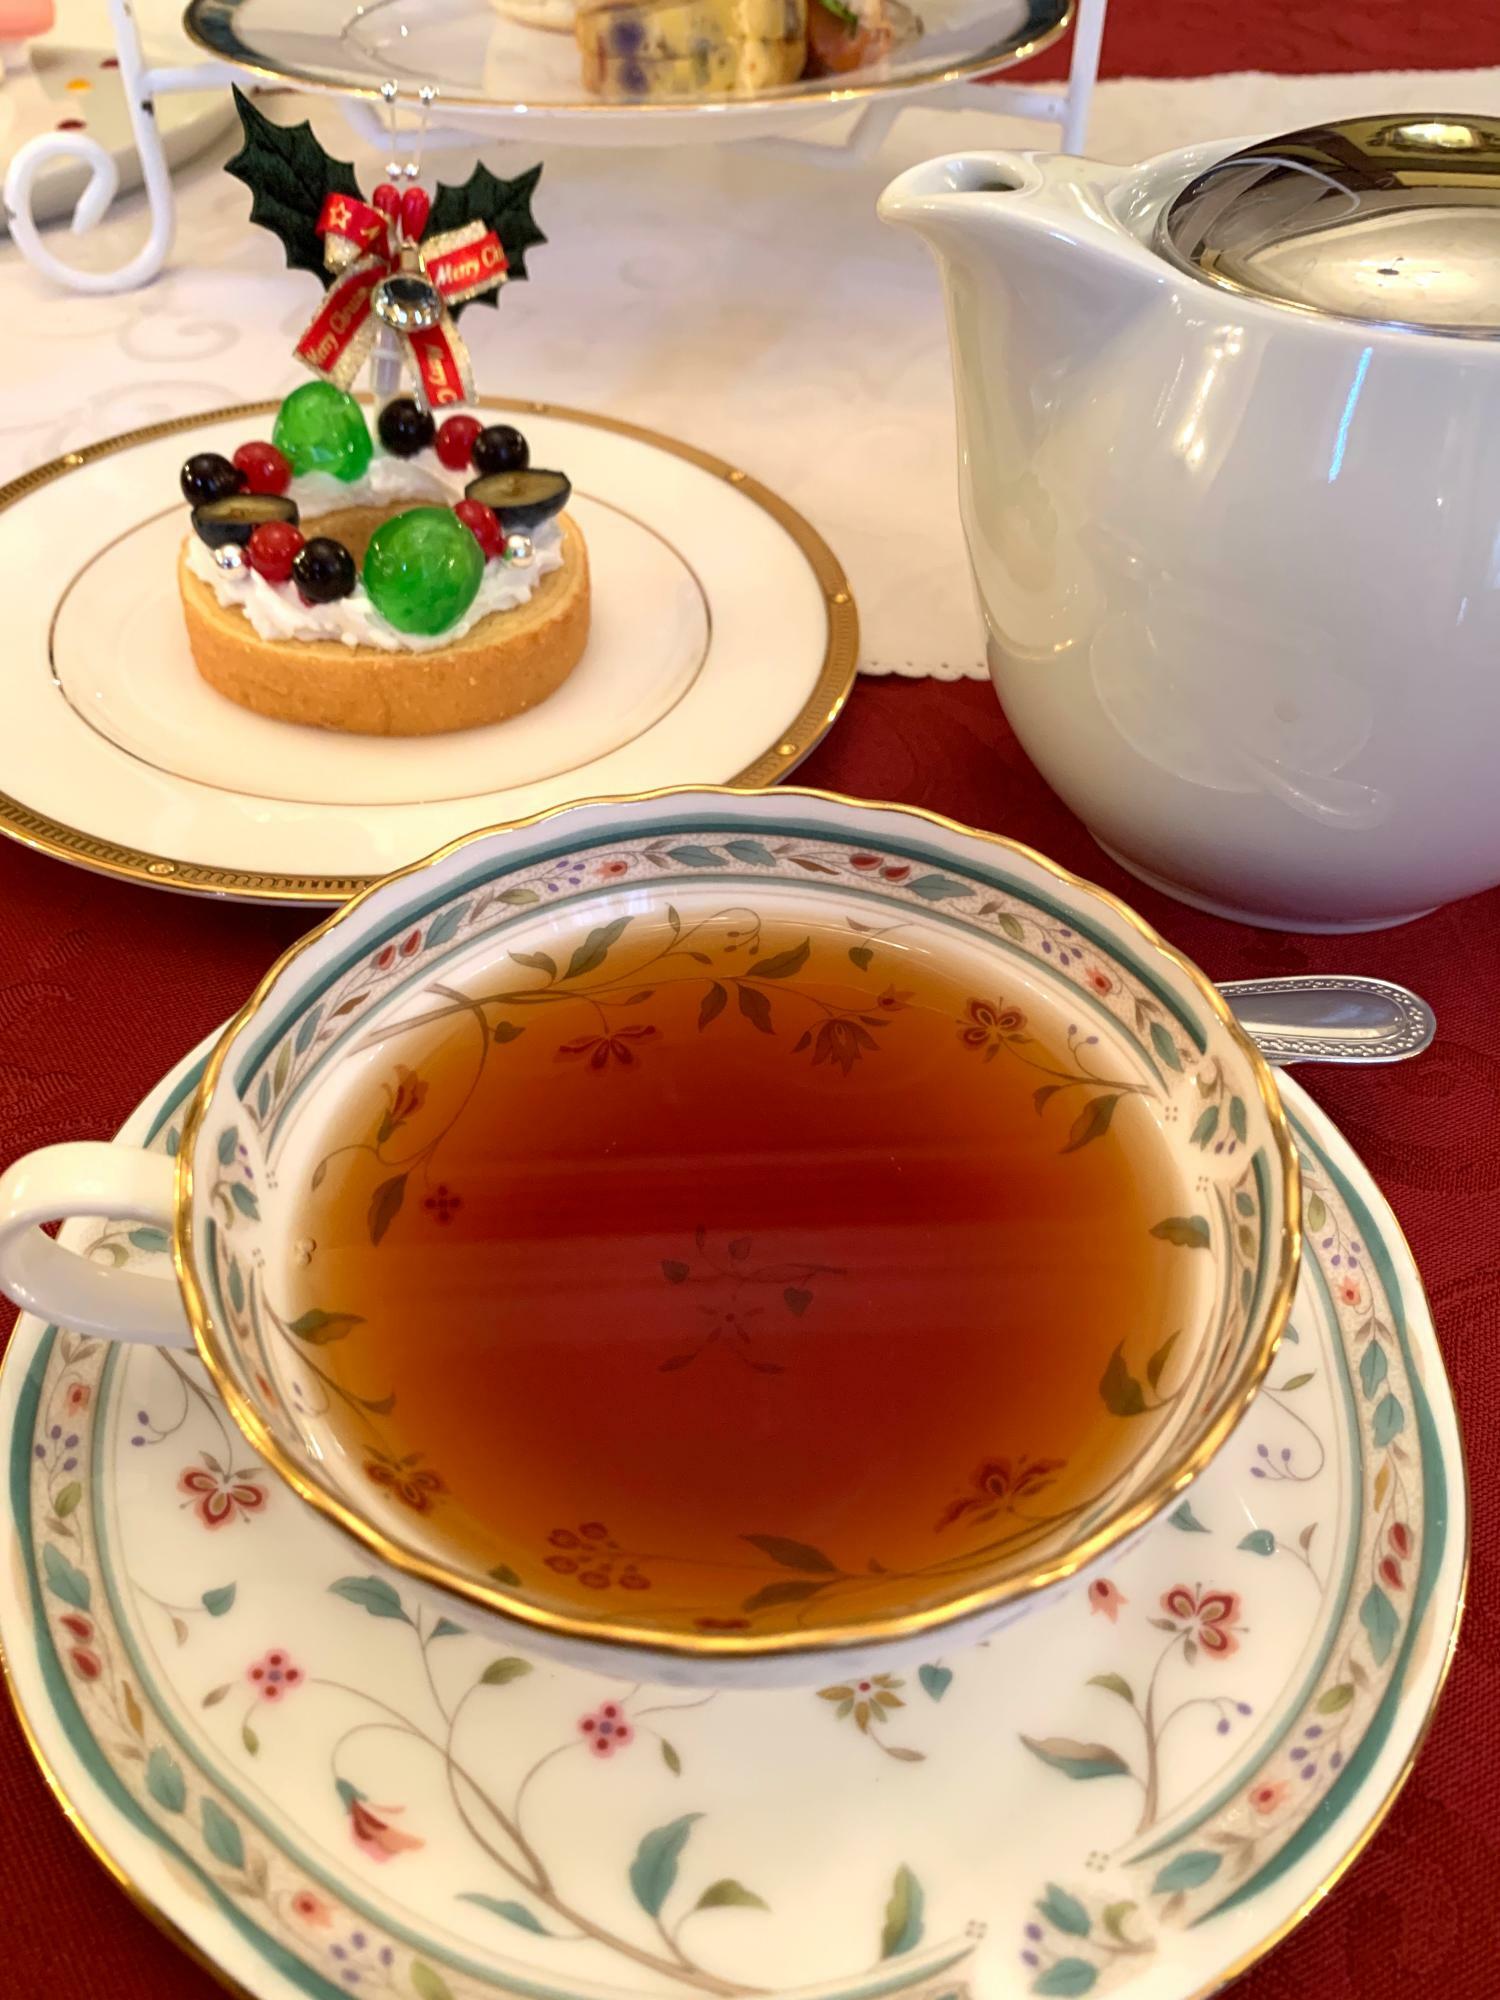 「マリアー ジュフレール」の紅茶が楽しめる